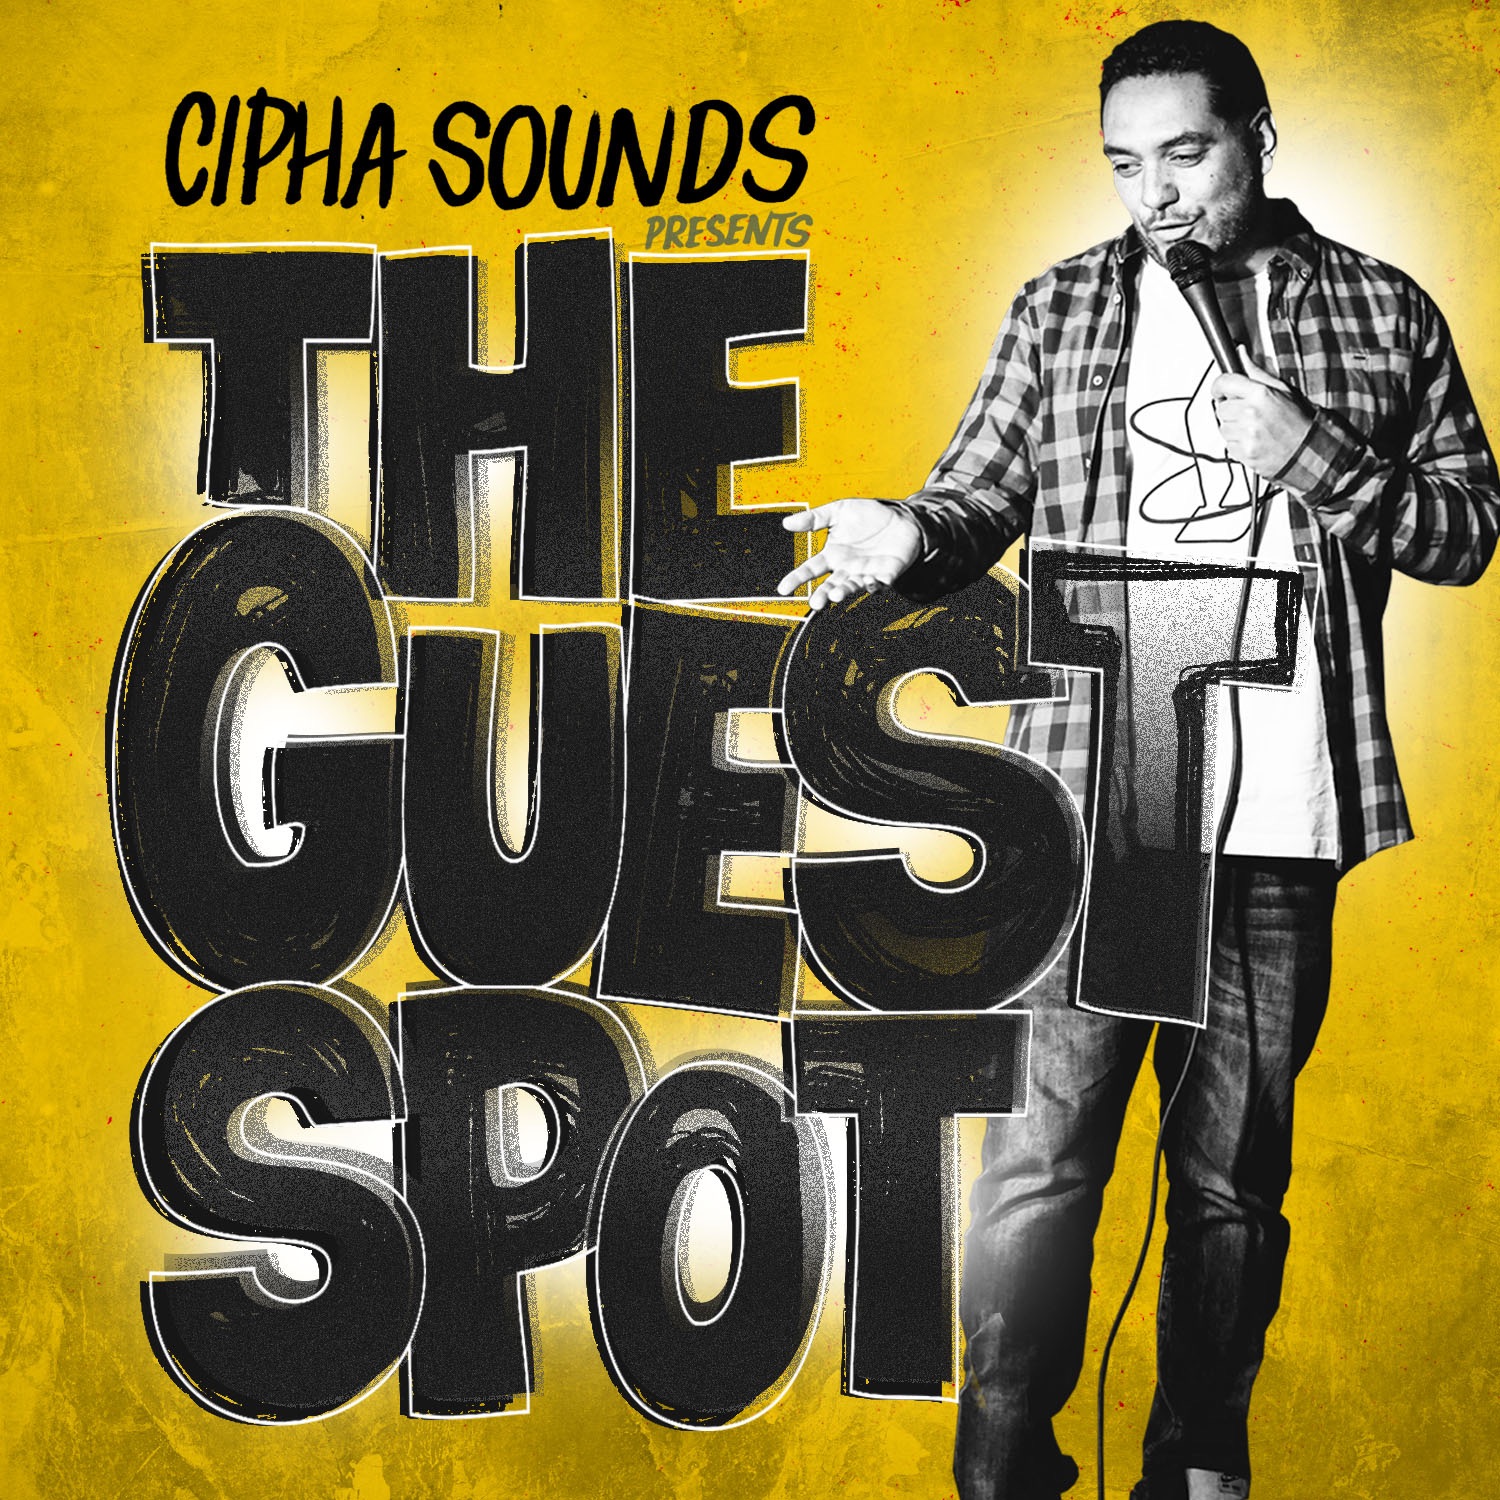 Cipha Sounds Presents The Guest Spot